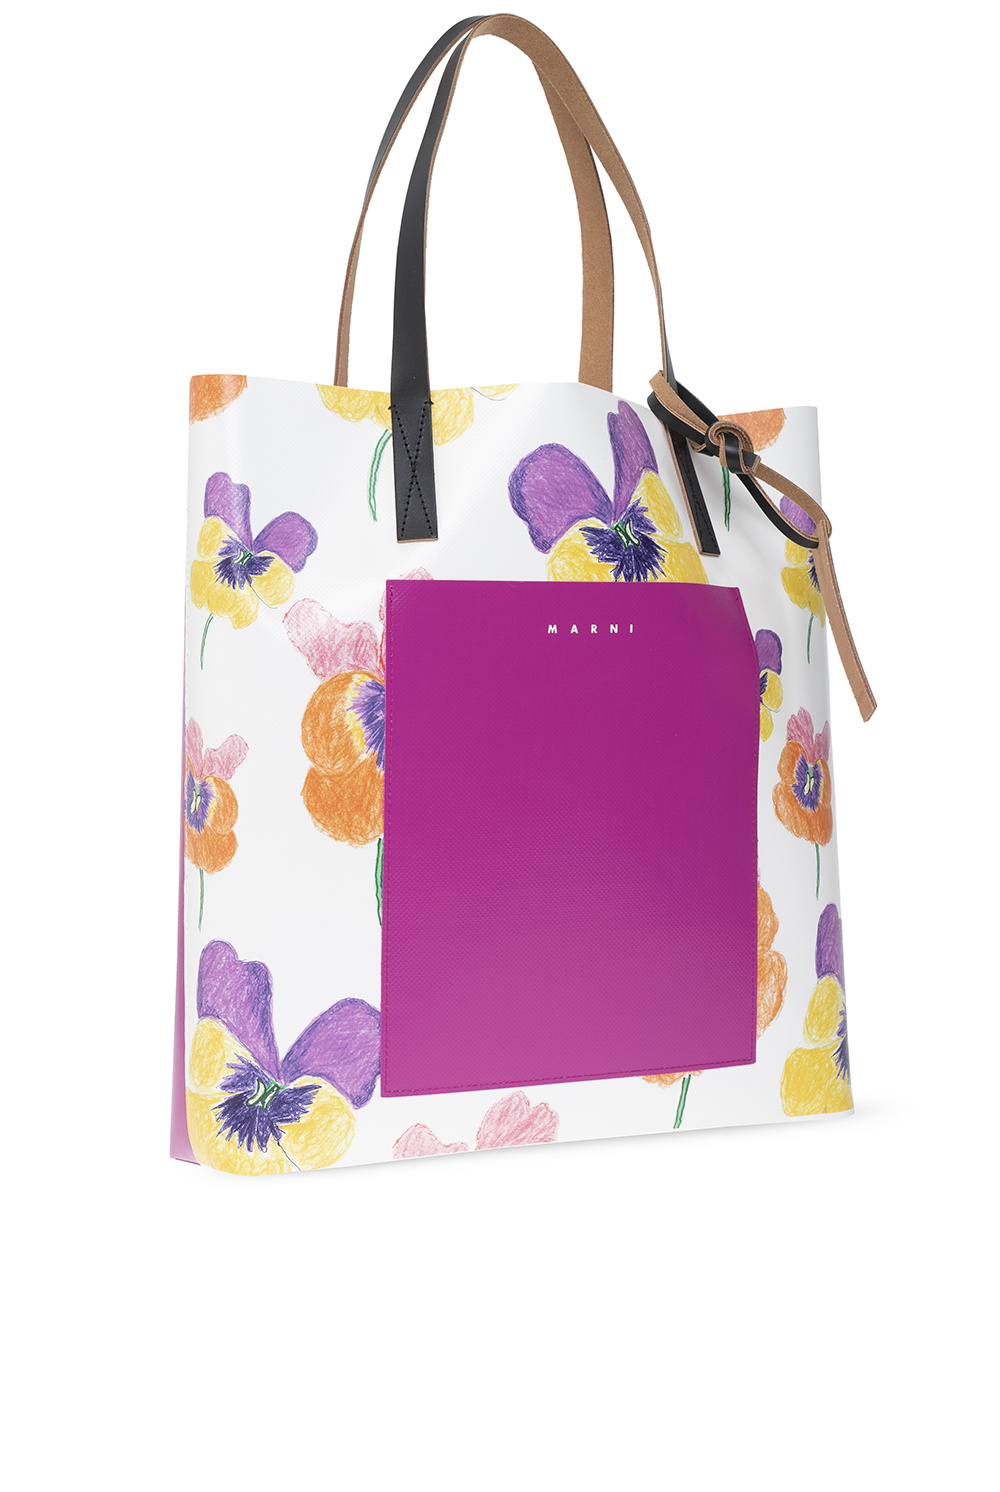 marni square ‘North-South’ shopper bag